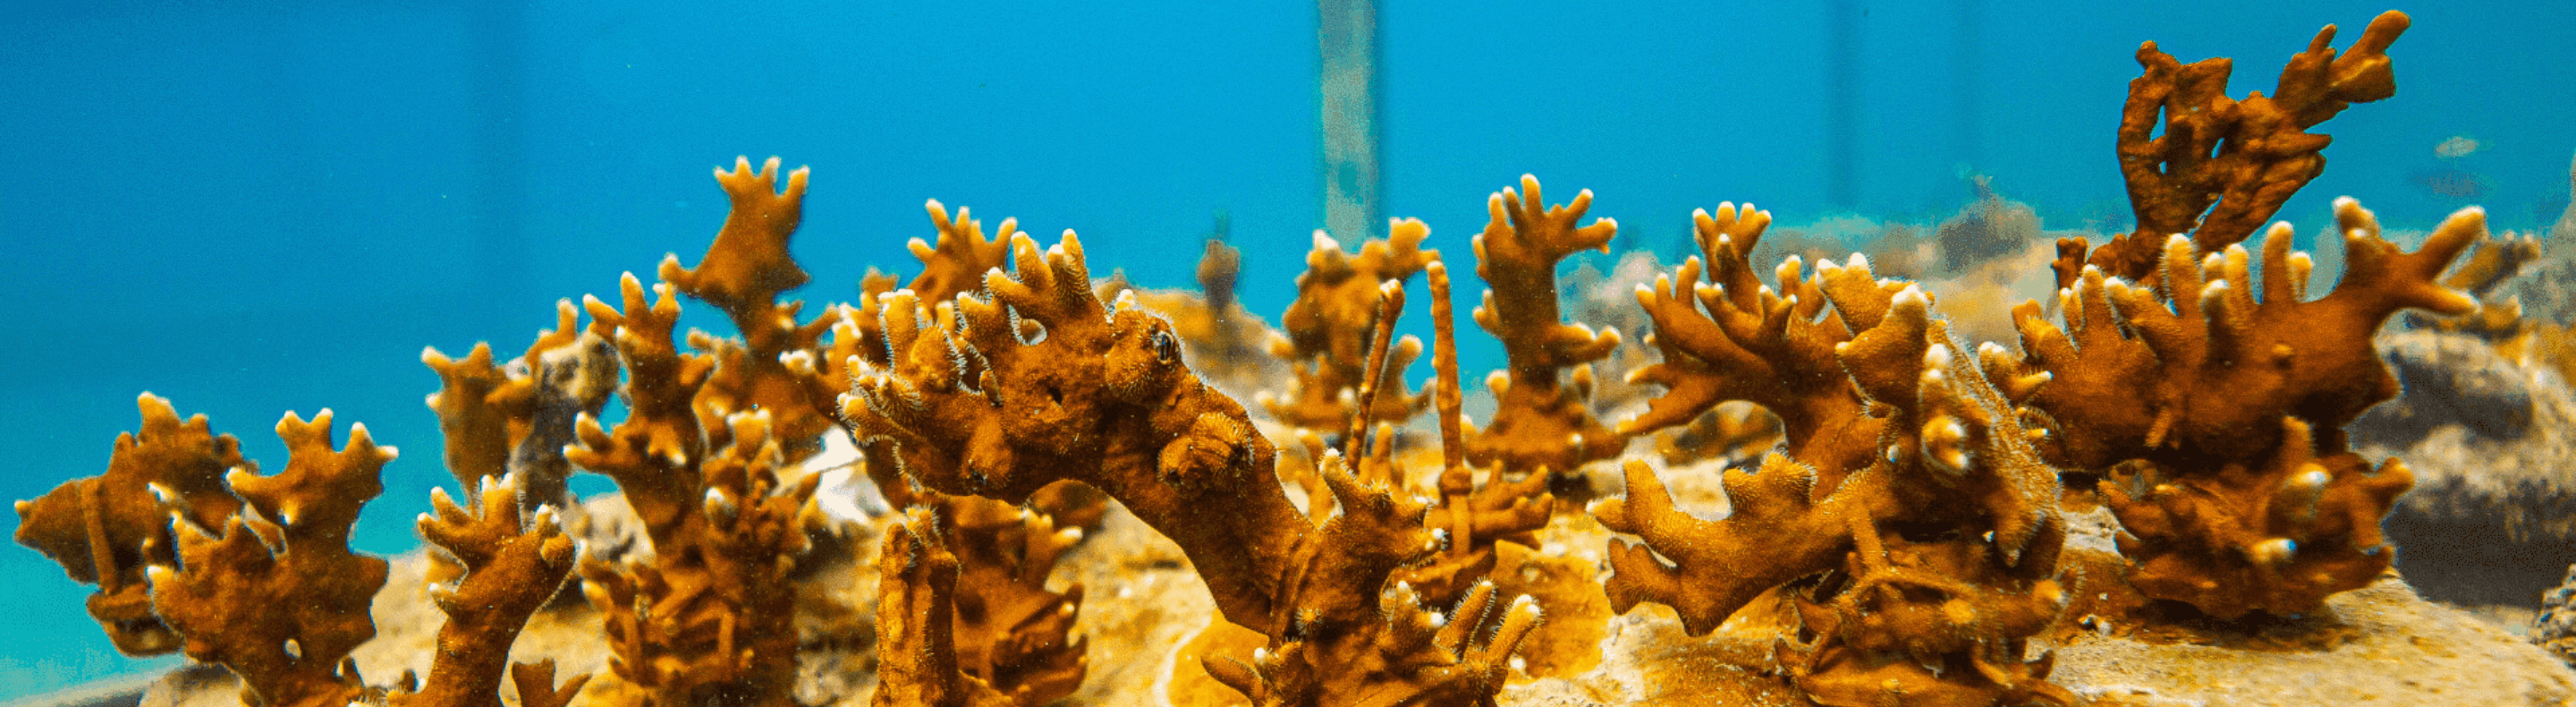 Pacote de corais biofabricados pela Biofábrica de Corais pelo Projeto Coralizar